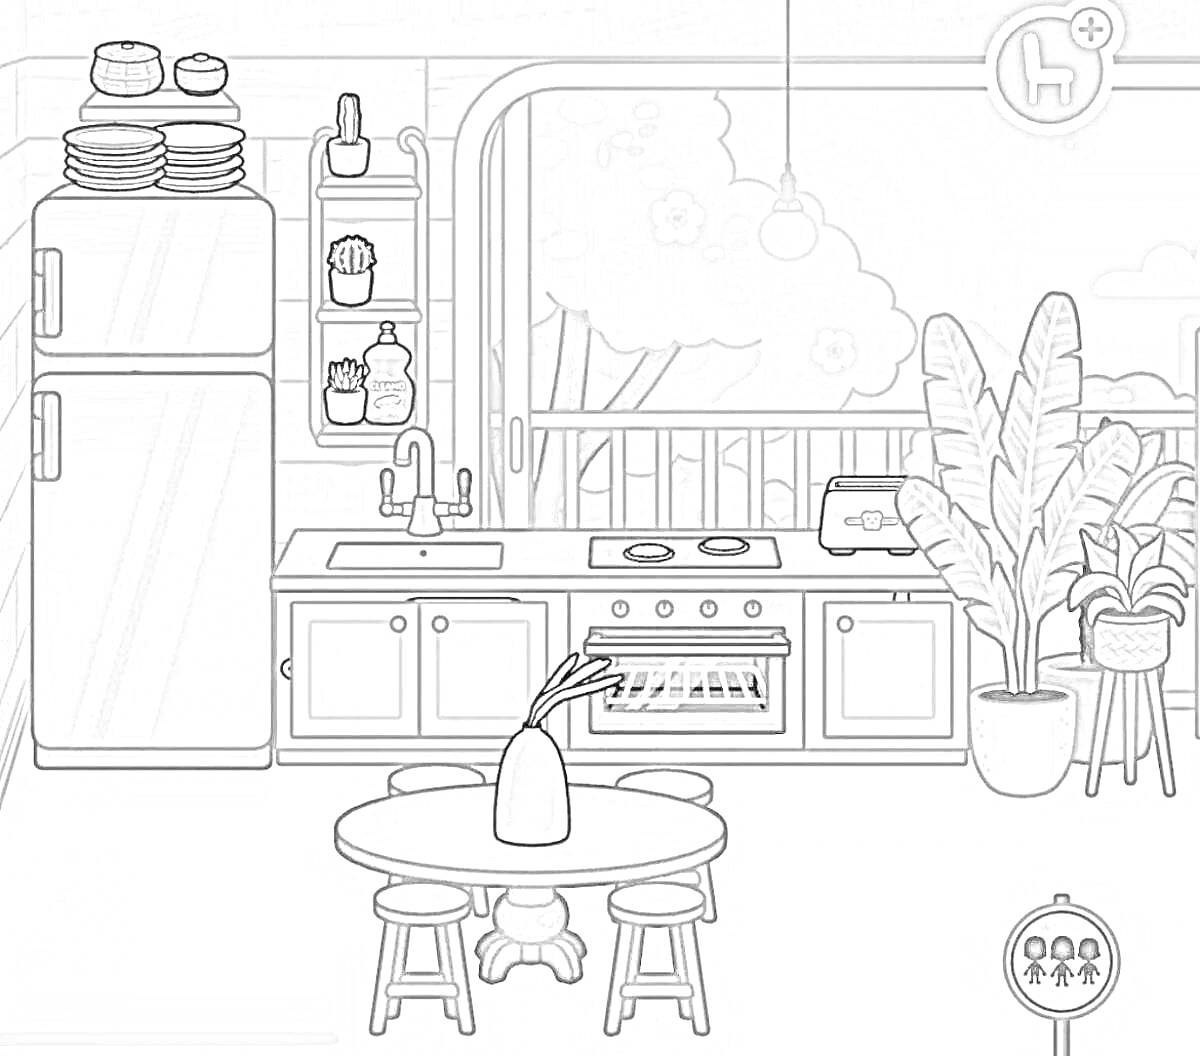 Раскраска Кухня с холодильником, плита с духовкой, мойка, стол с вазой и стульями, растения, балкон с видом на природу